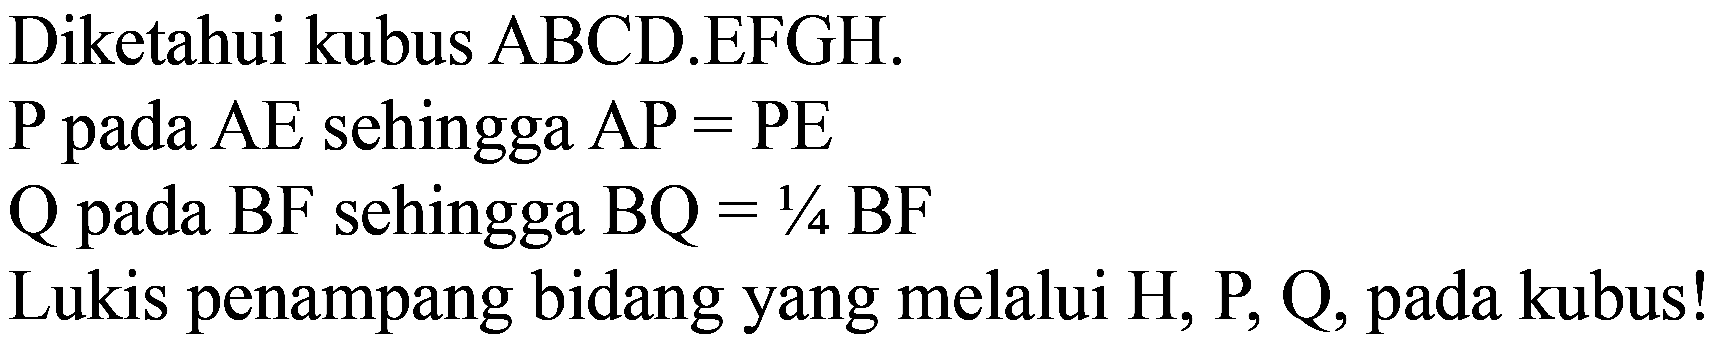 Diketahui kubus ABCD.EFGH.
 P  pada  AE  sehingga  AP=PE 
Q pada BF sehingga  BQ=1 / 4 BF 
Lukis penampang bidang yang melalui  H, P, Q , pada kubus!